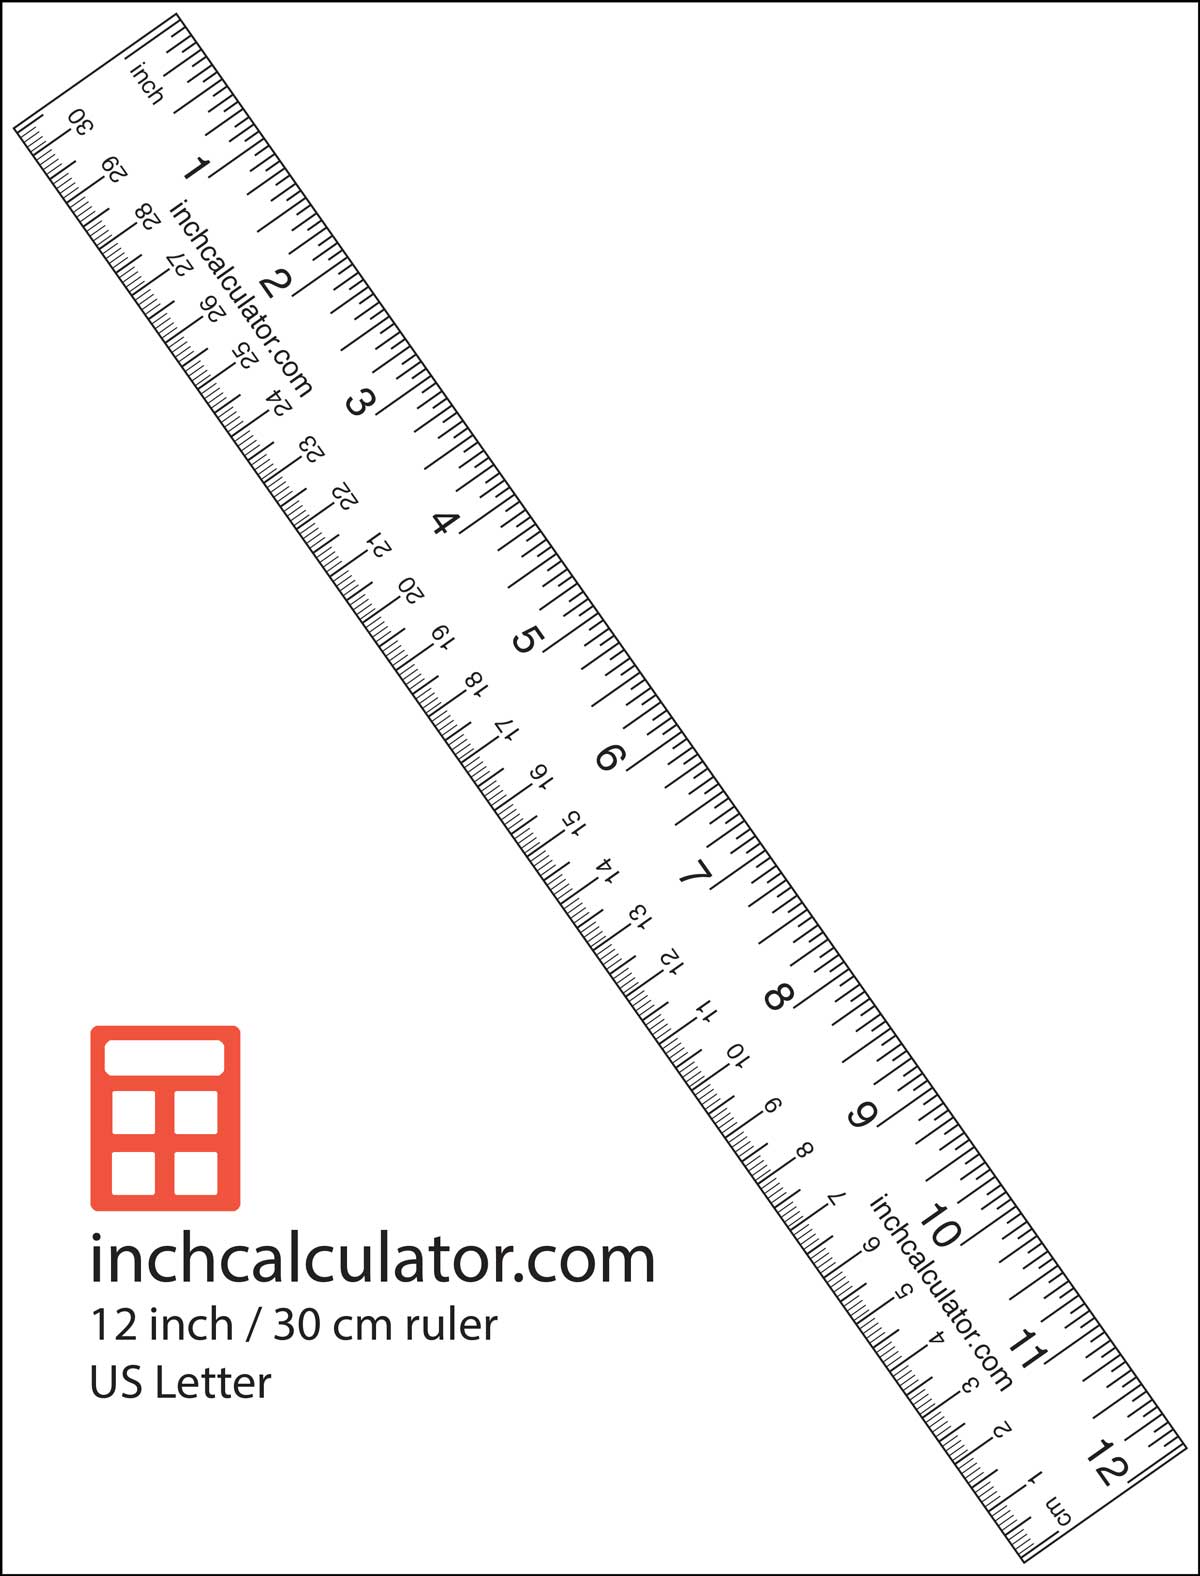 Print een papierliniaal om metingen uit te voeren als u geen meetlint of meetlint't have a tape measure or ruler